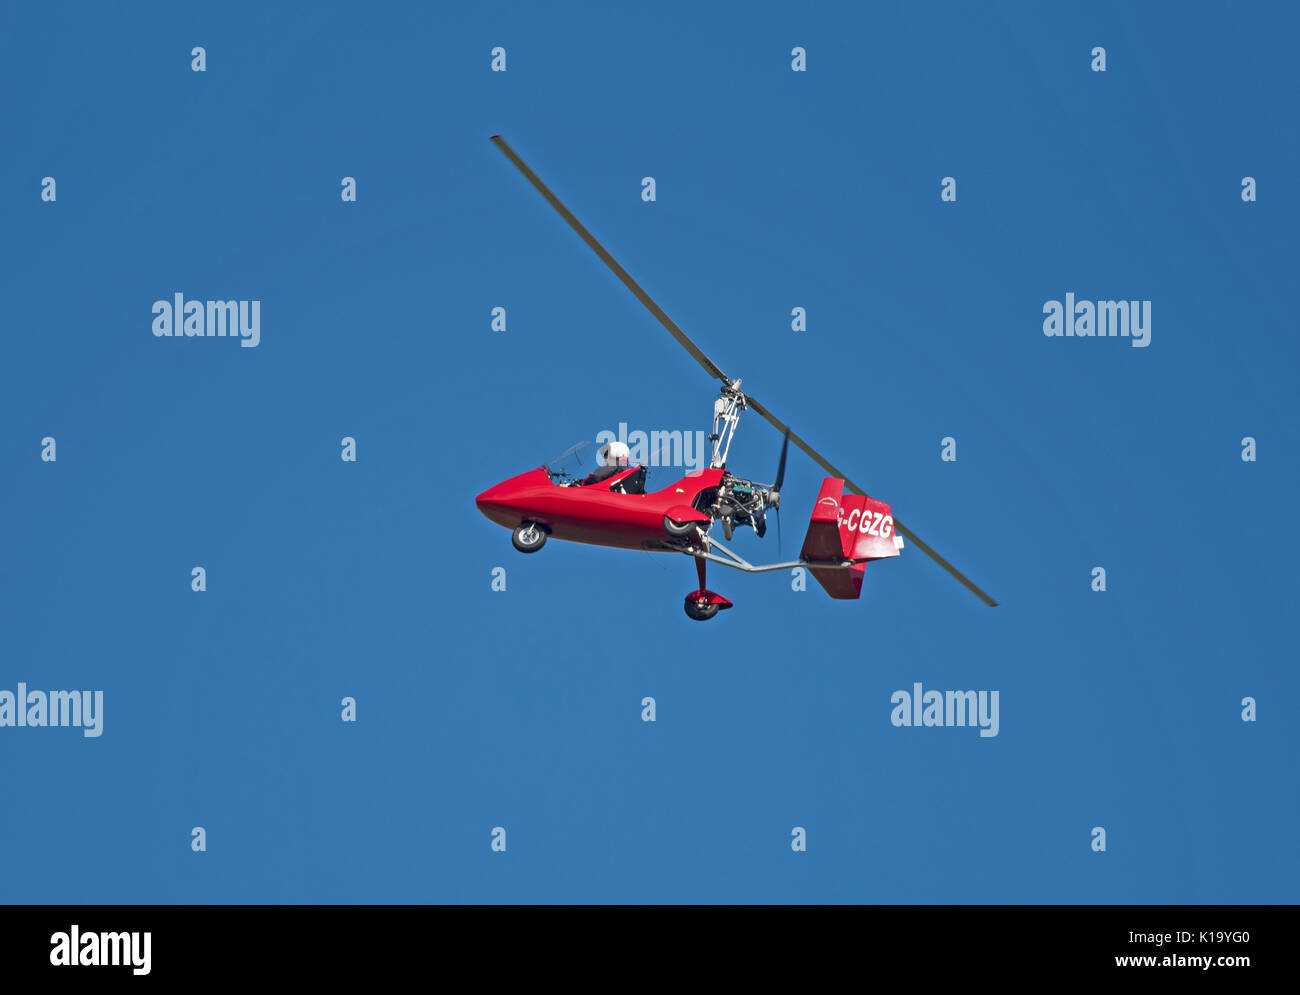 Aviation Stock Photo